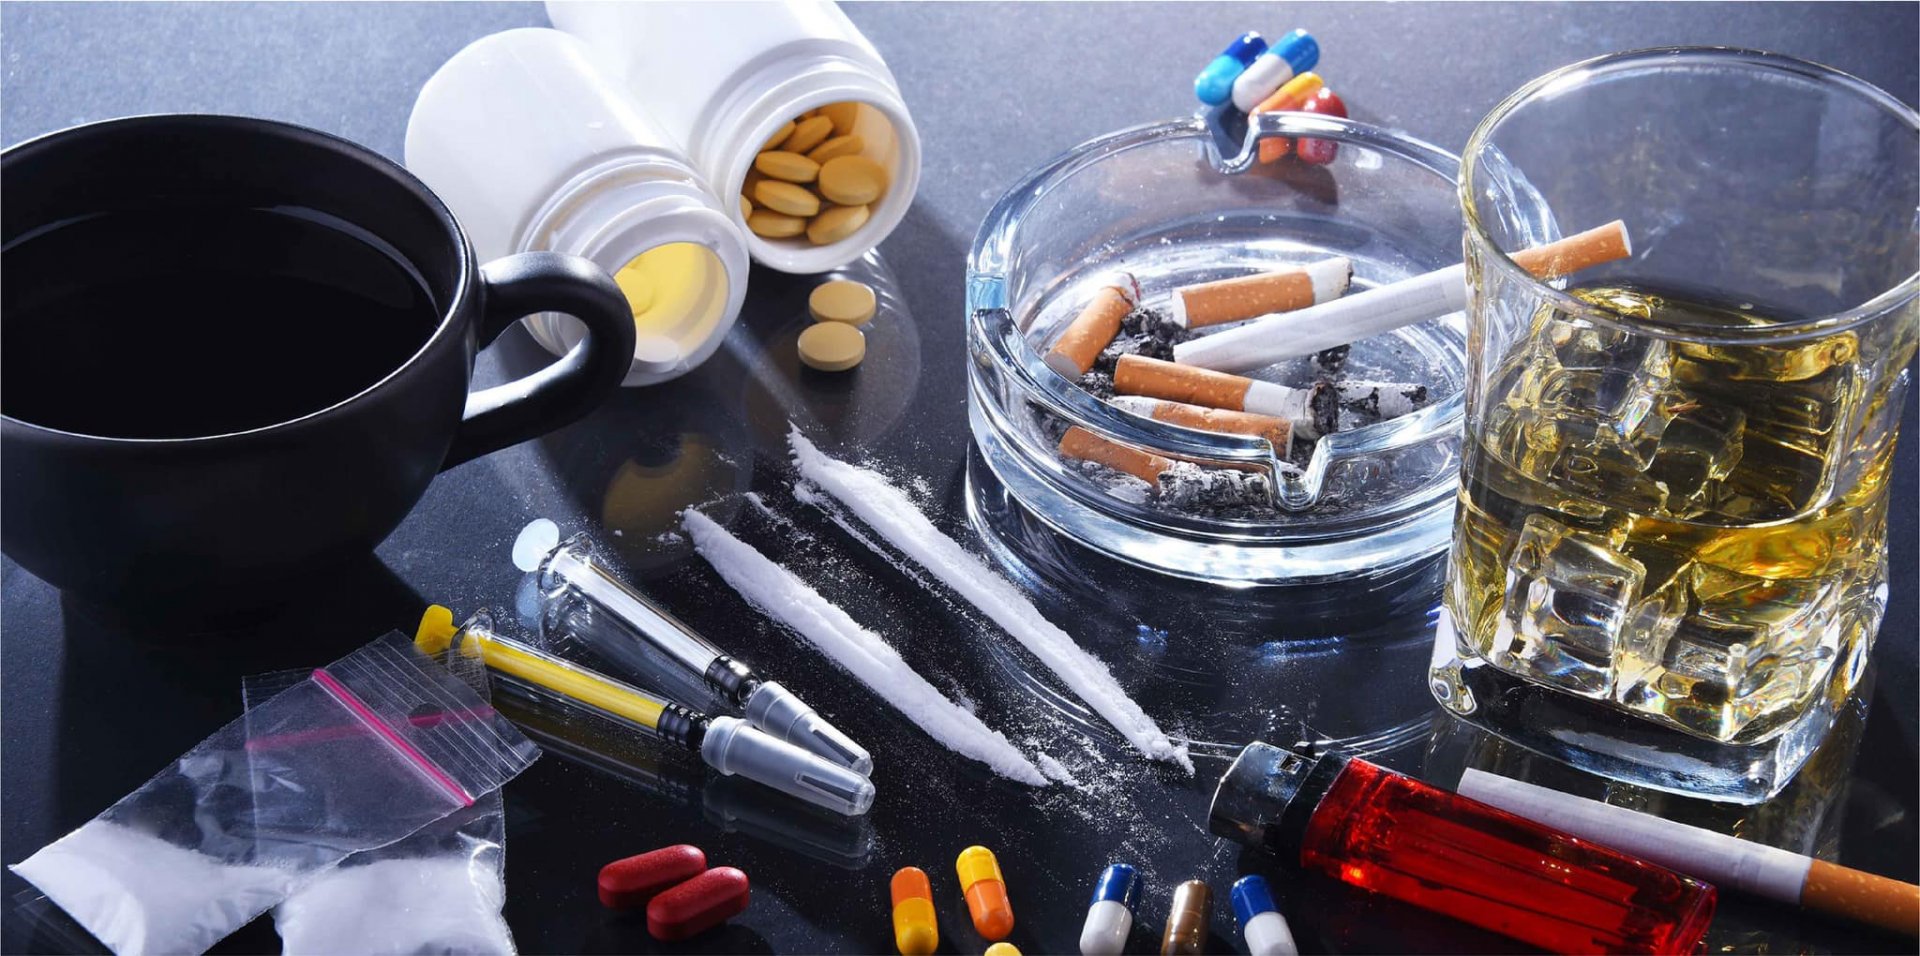 วิธีการบำบัด-ผู้เสพสารเสพติด รวมถึงเหล้าและบุหรี่